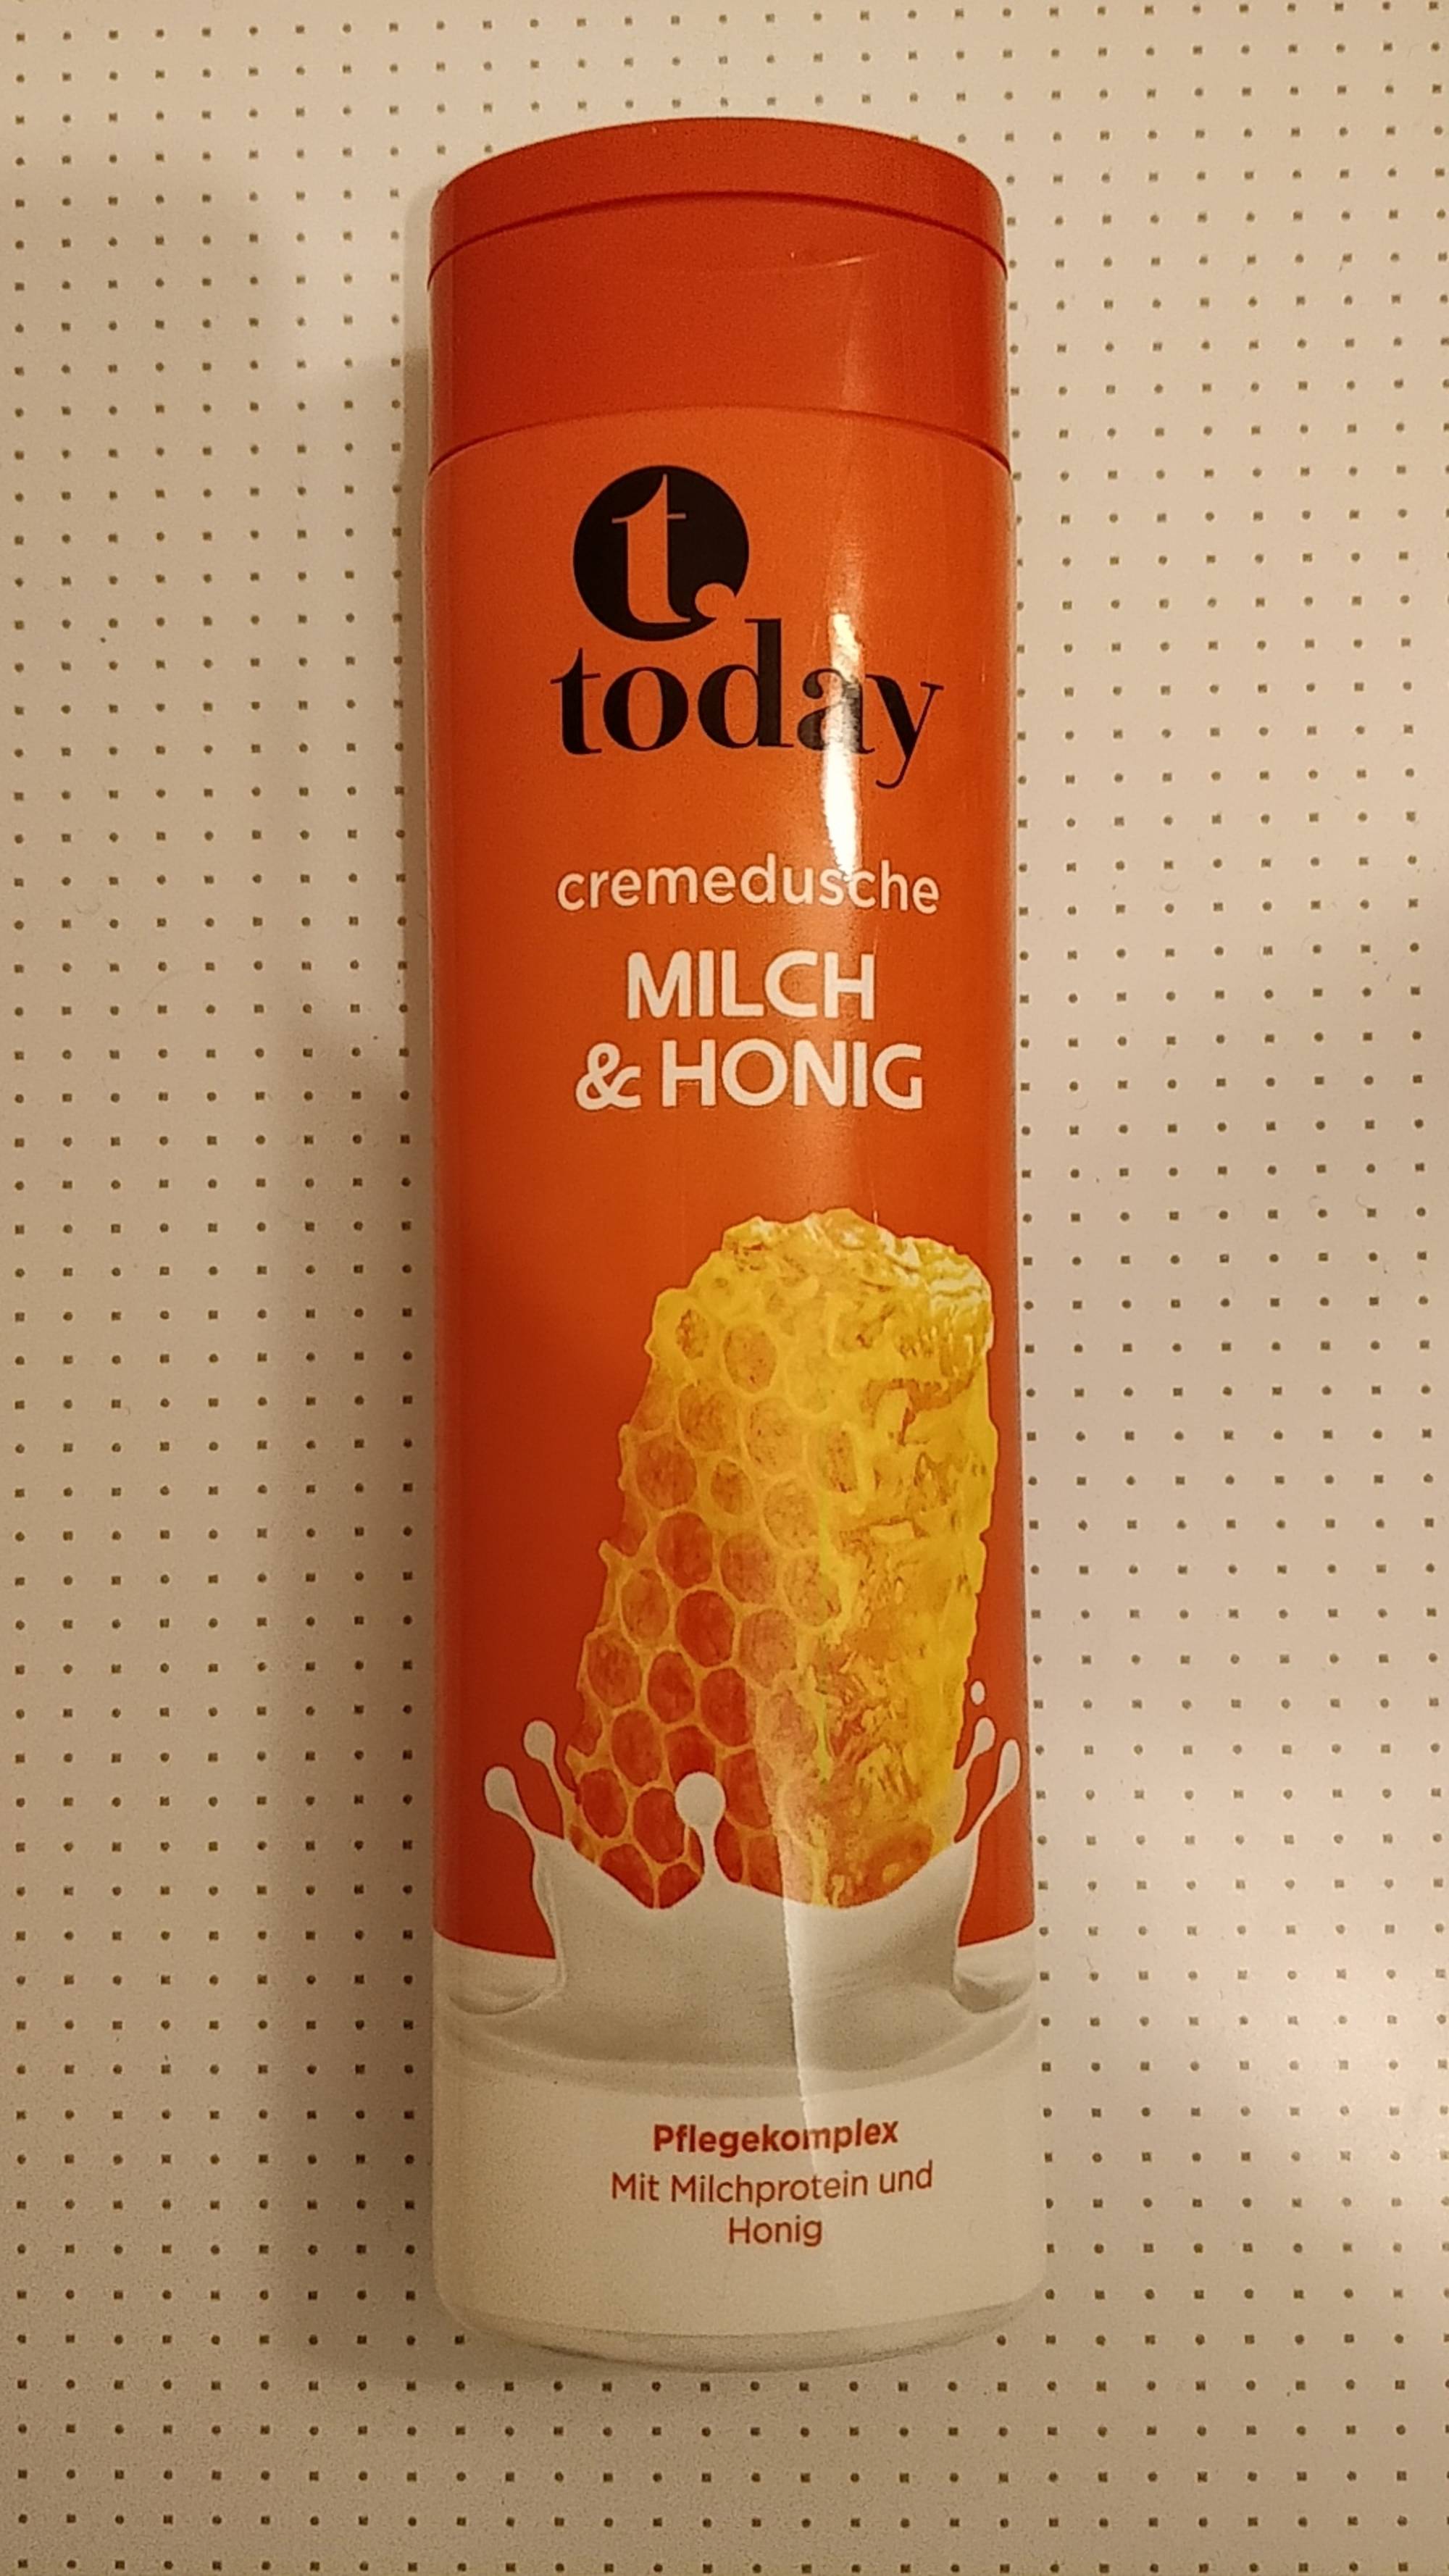 TODAY - Cremedusche - Milch & honig